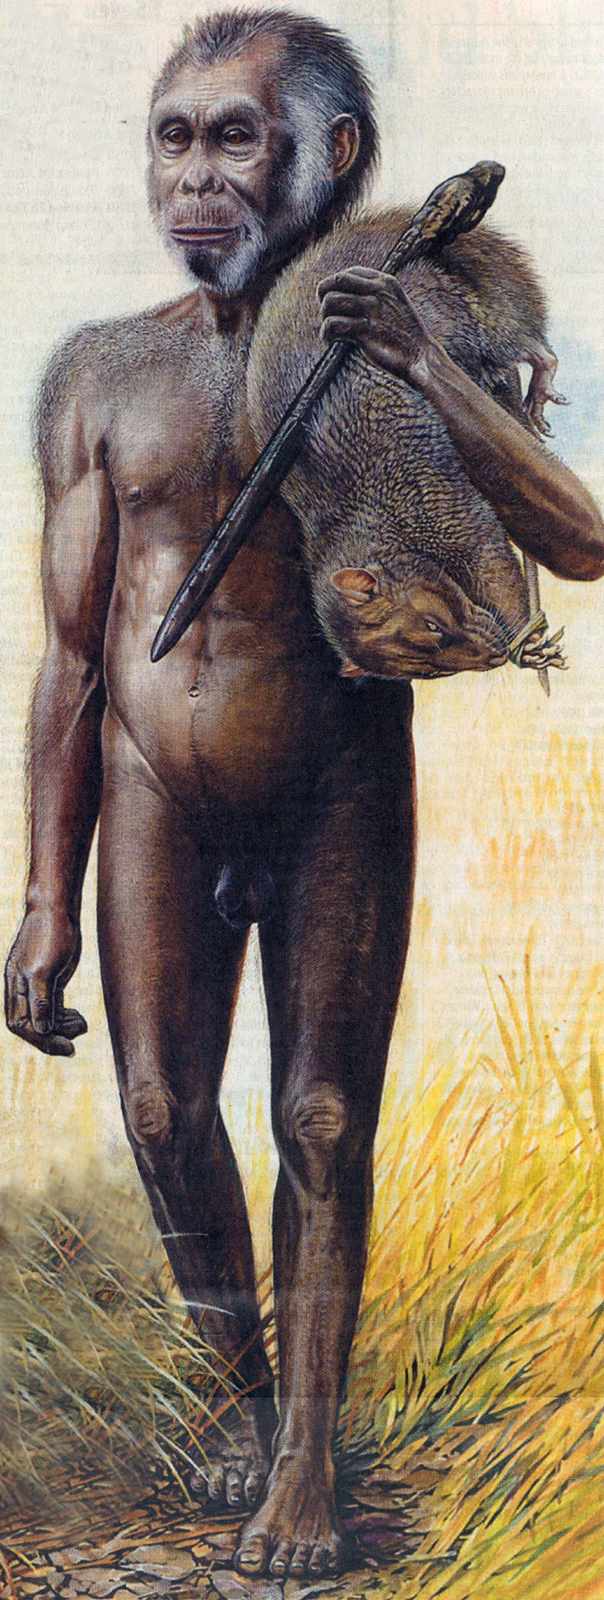 Ricostruzione dipinta dell'uomo floresiensis